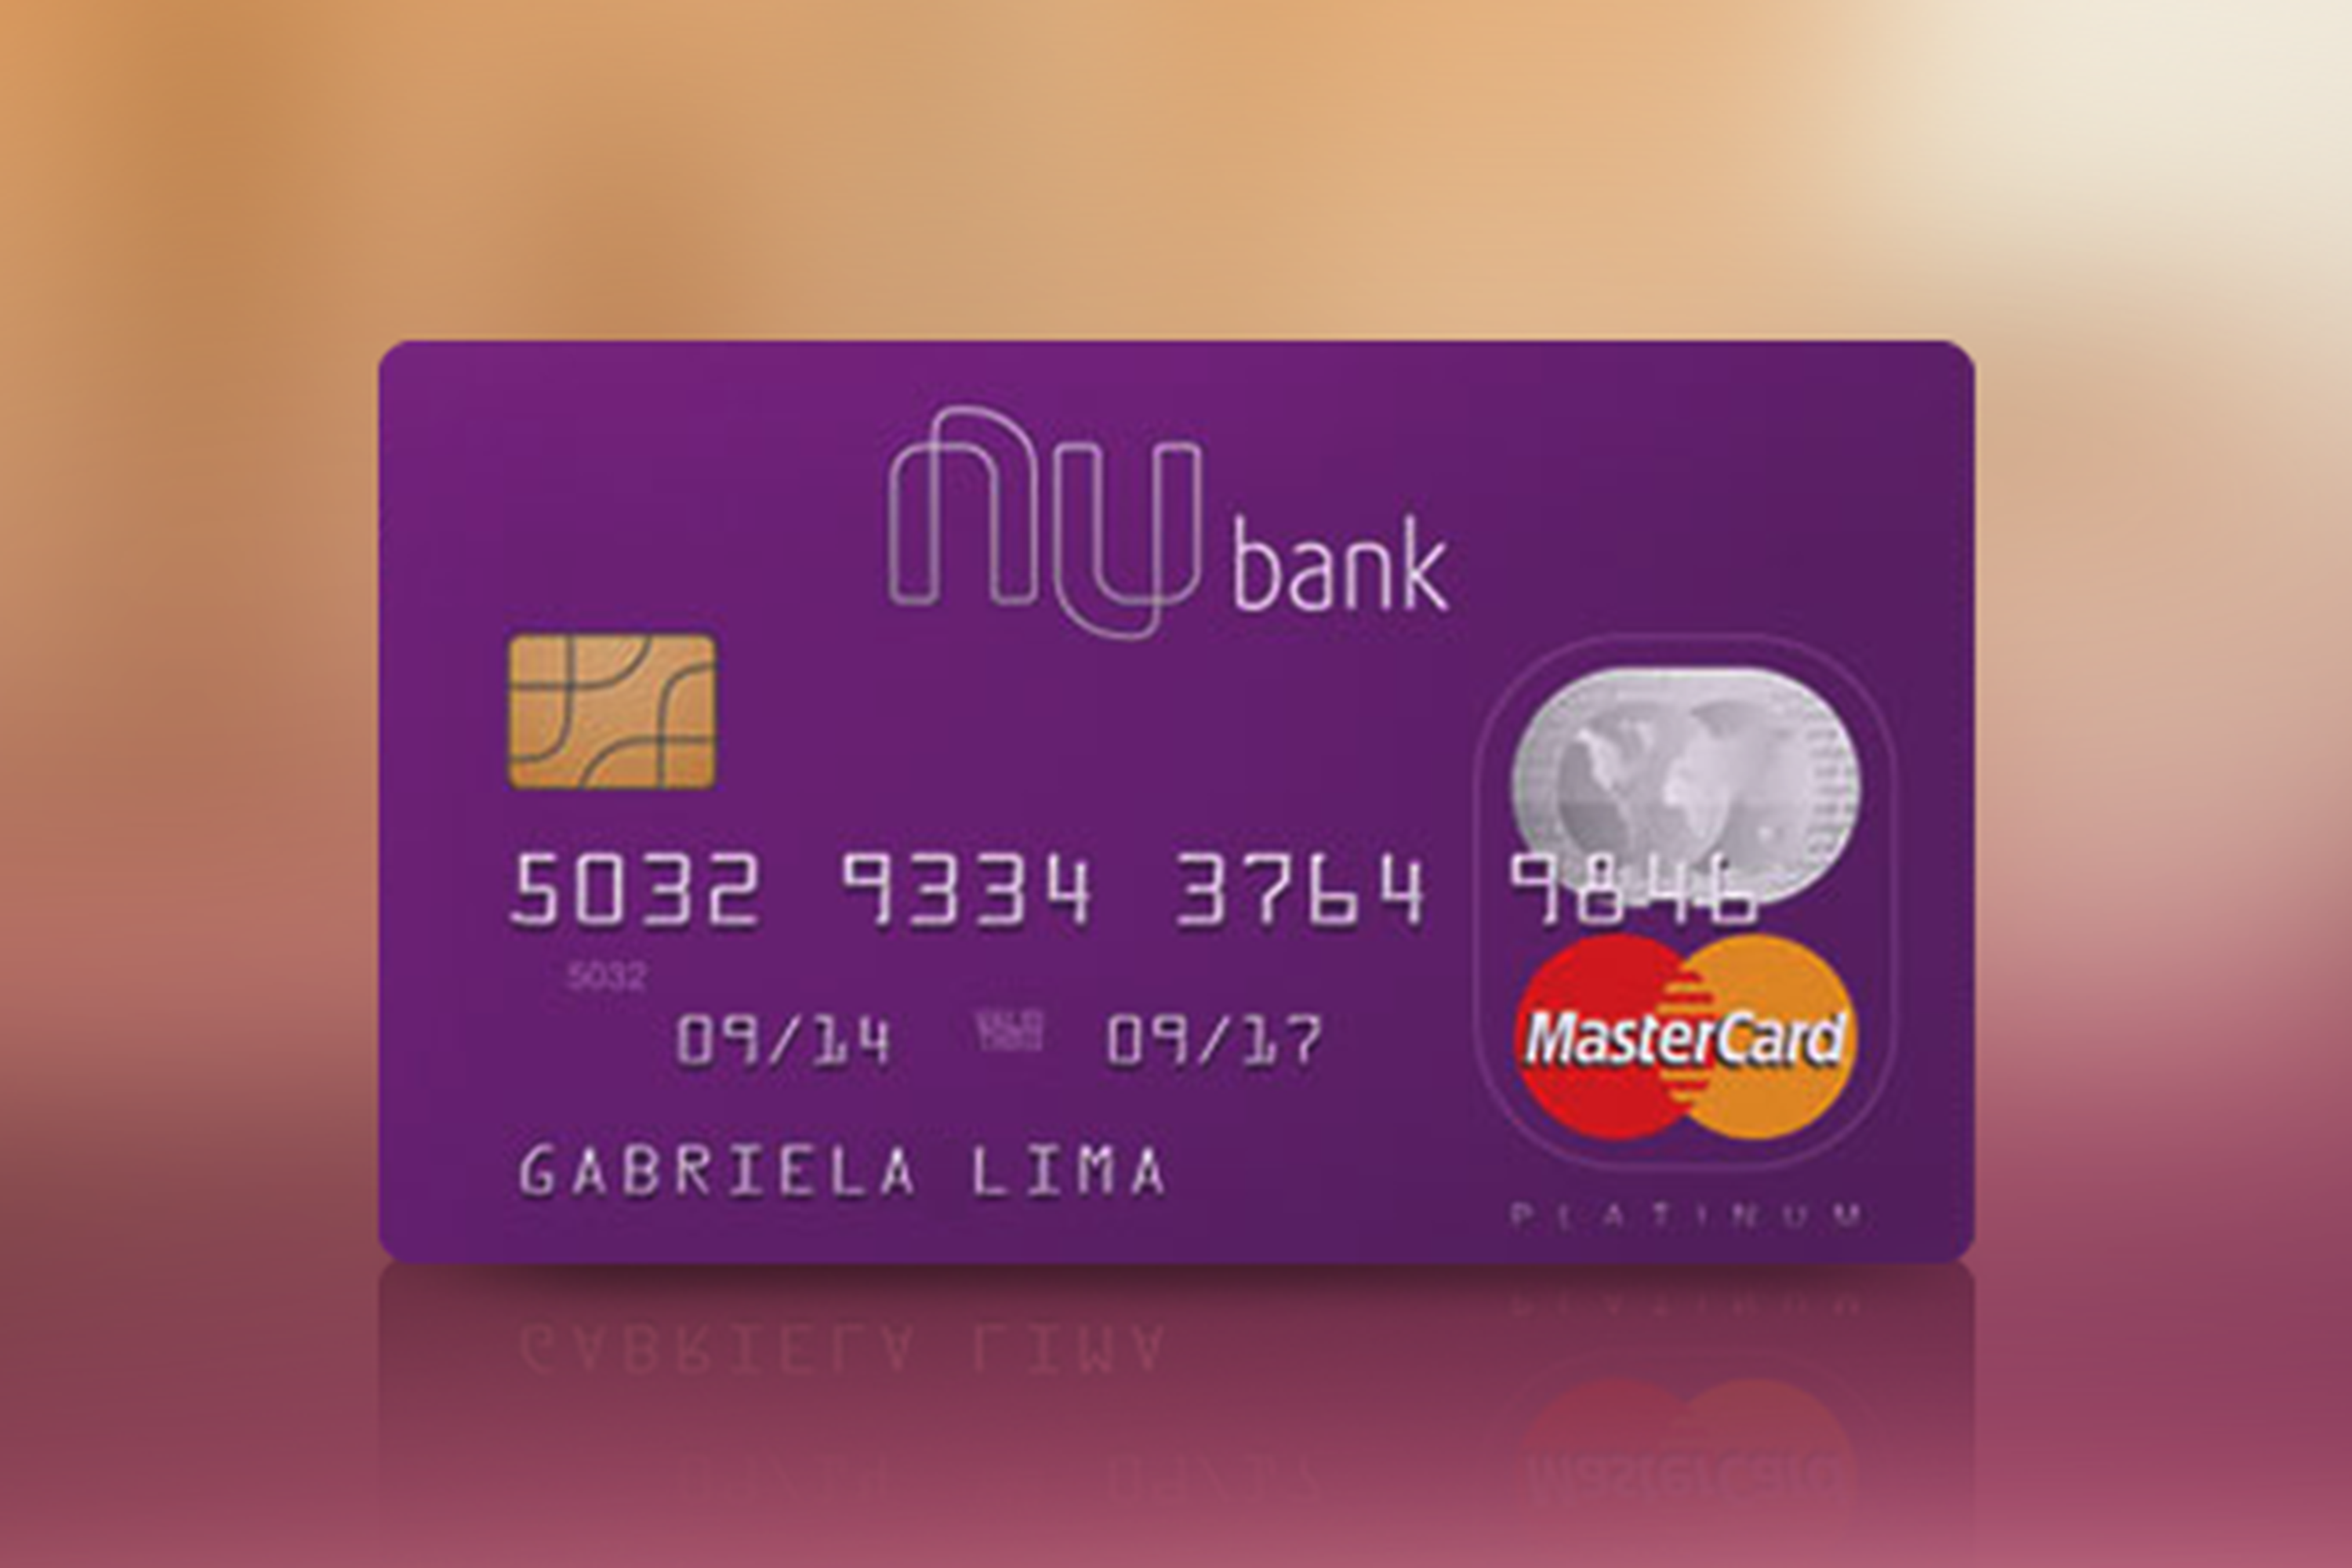 Seguro proteção de preço Nubank é benefício desconhecido no cartão